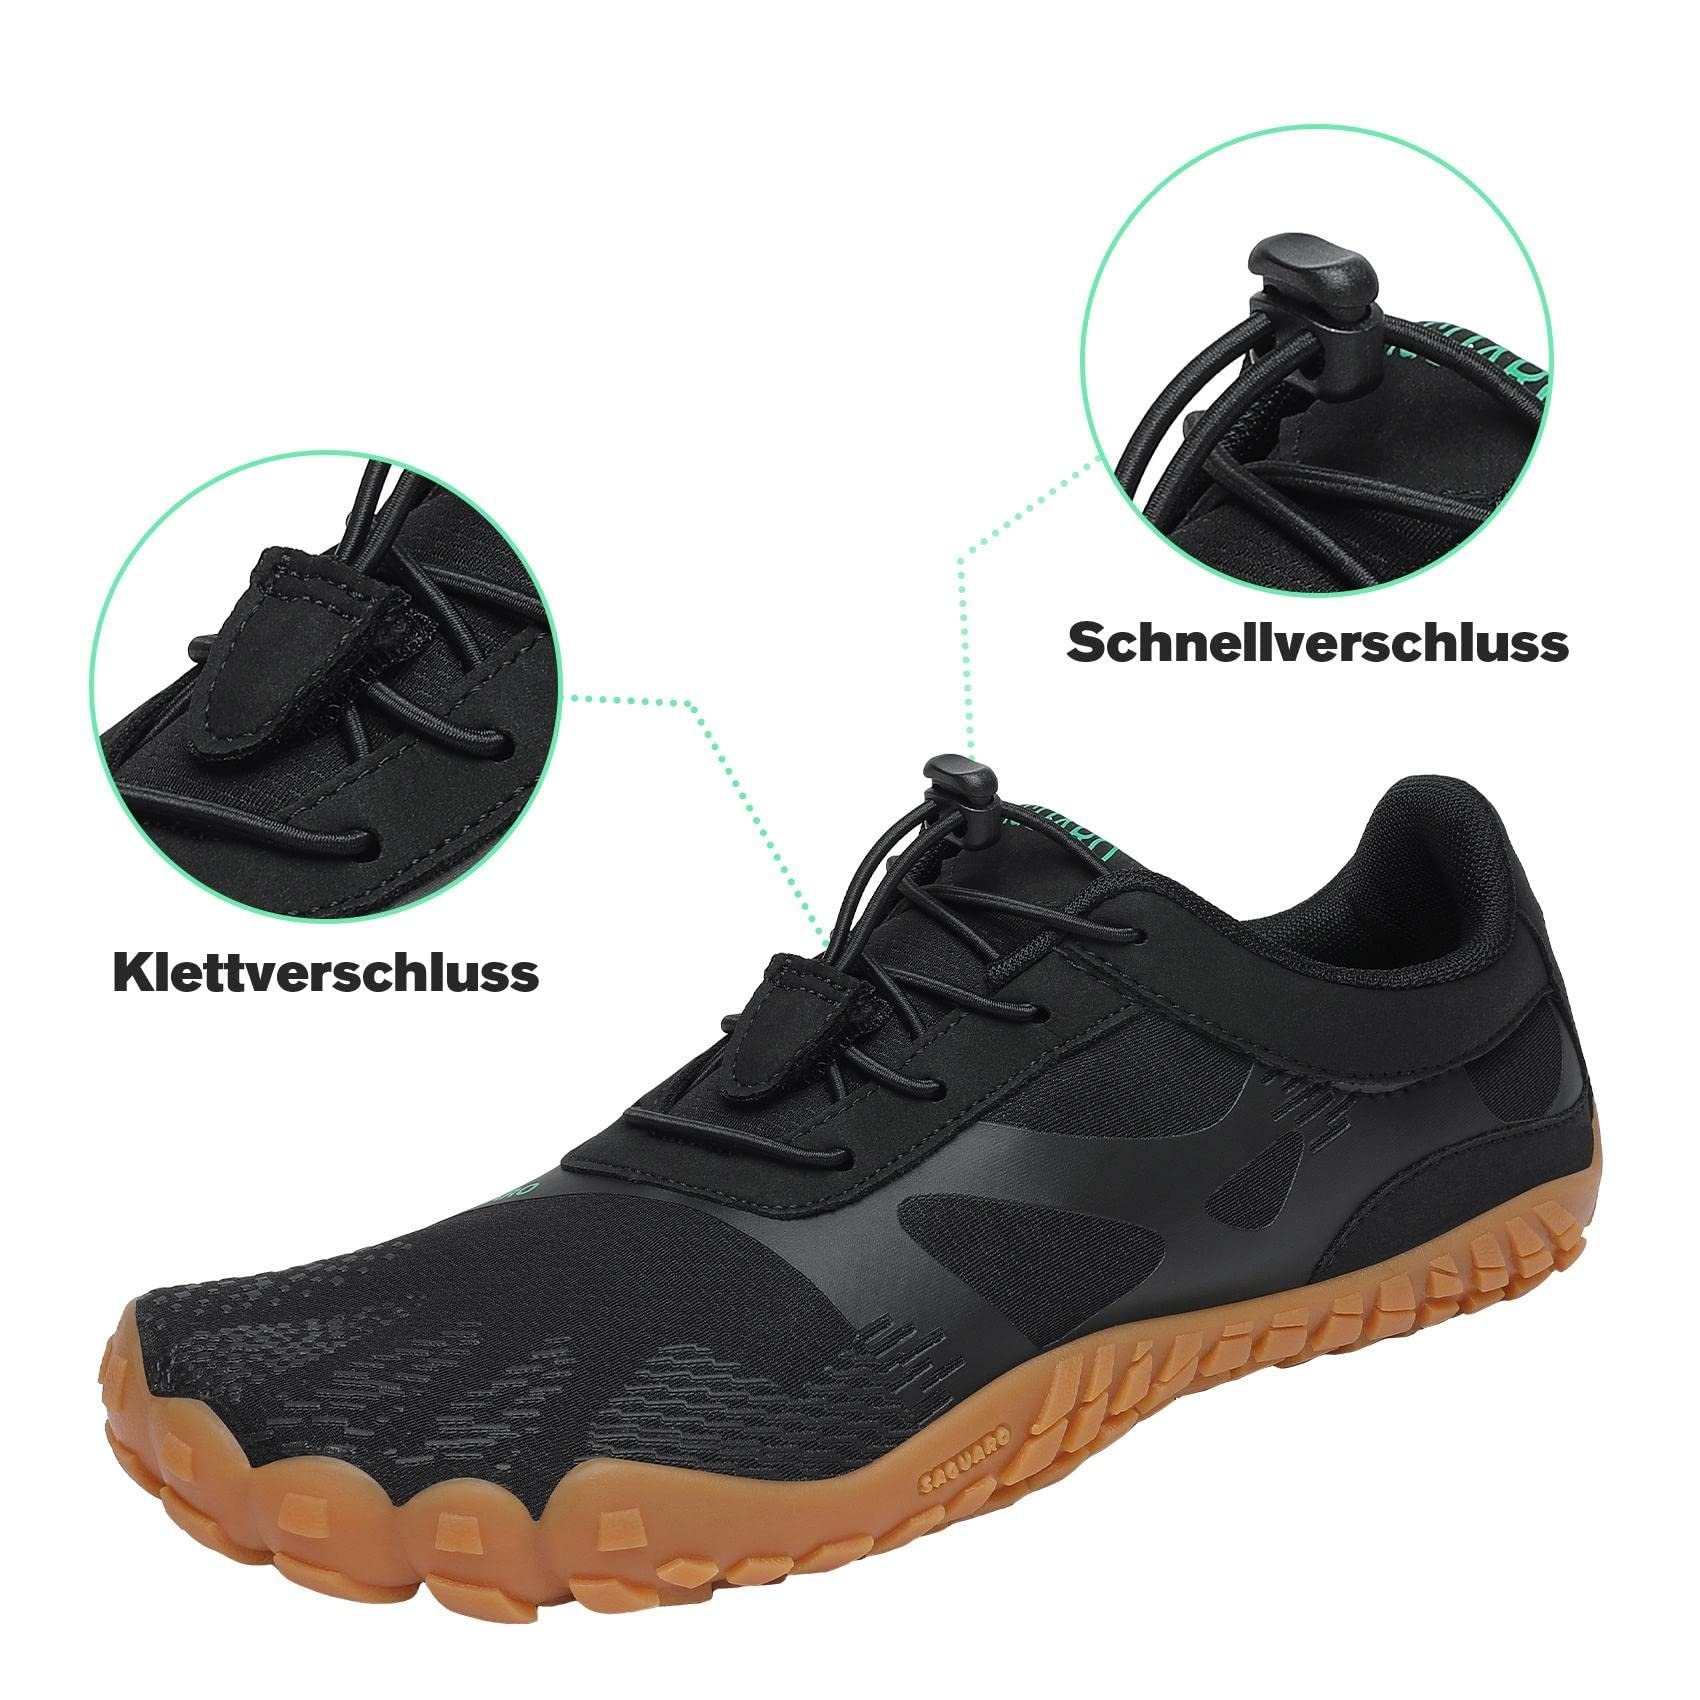 Sneaker Sport-Schuhe Laufschuhe Barfußschuh leicht, (bequem, Schwarz Minimalschuhe rutschfest) AC Trail-Running atmungsaktiv, Jogging SAGUARO